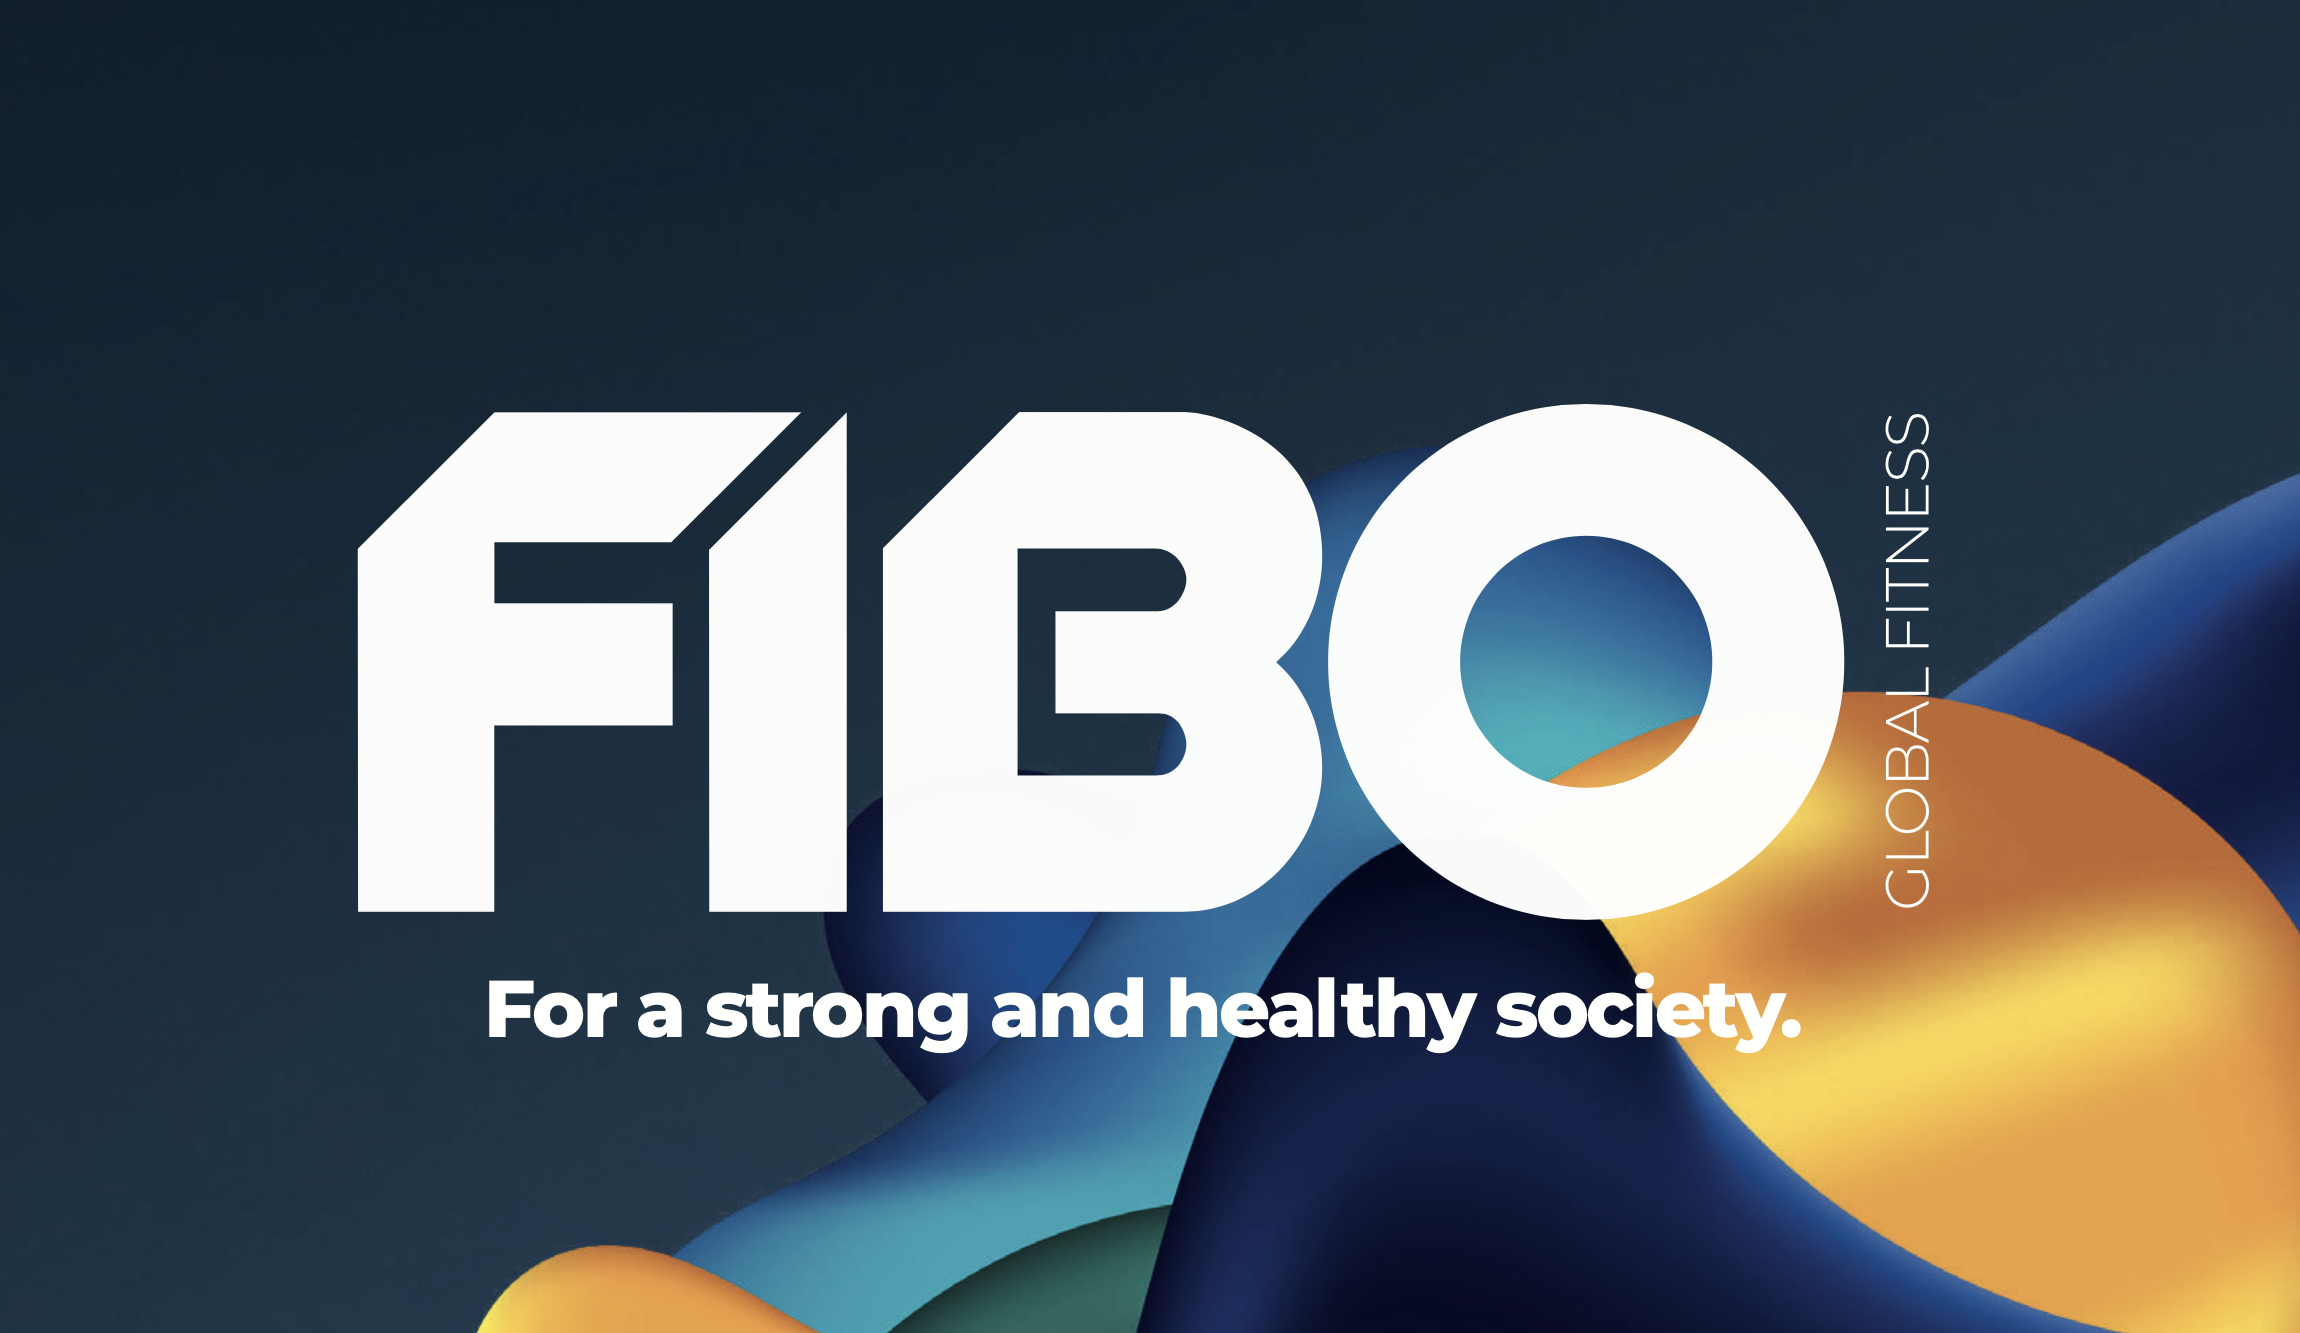 Logo de FIBO 2023, la mayor convención de fitness y bienestar de Europa en Colonia, Alemania